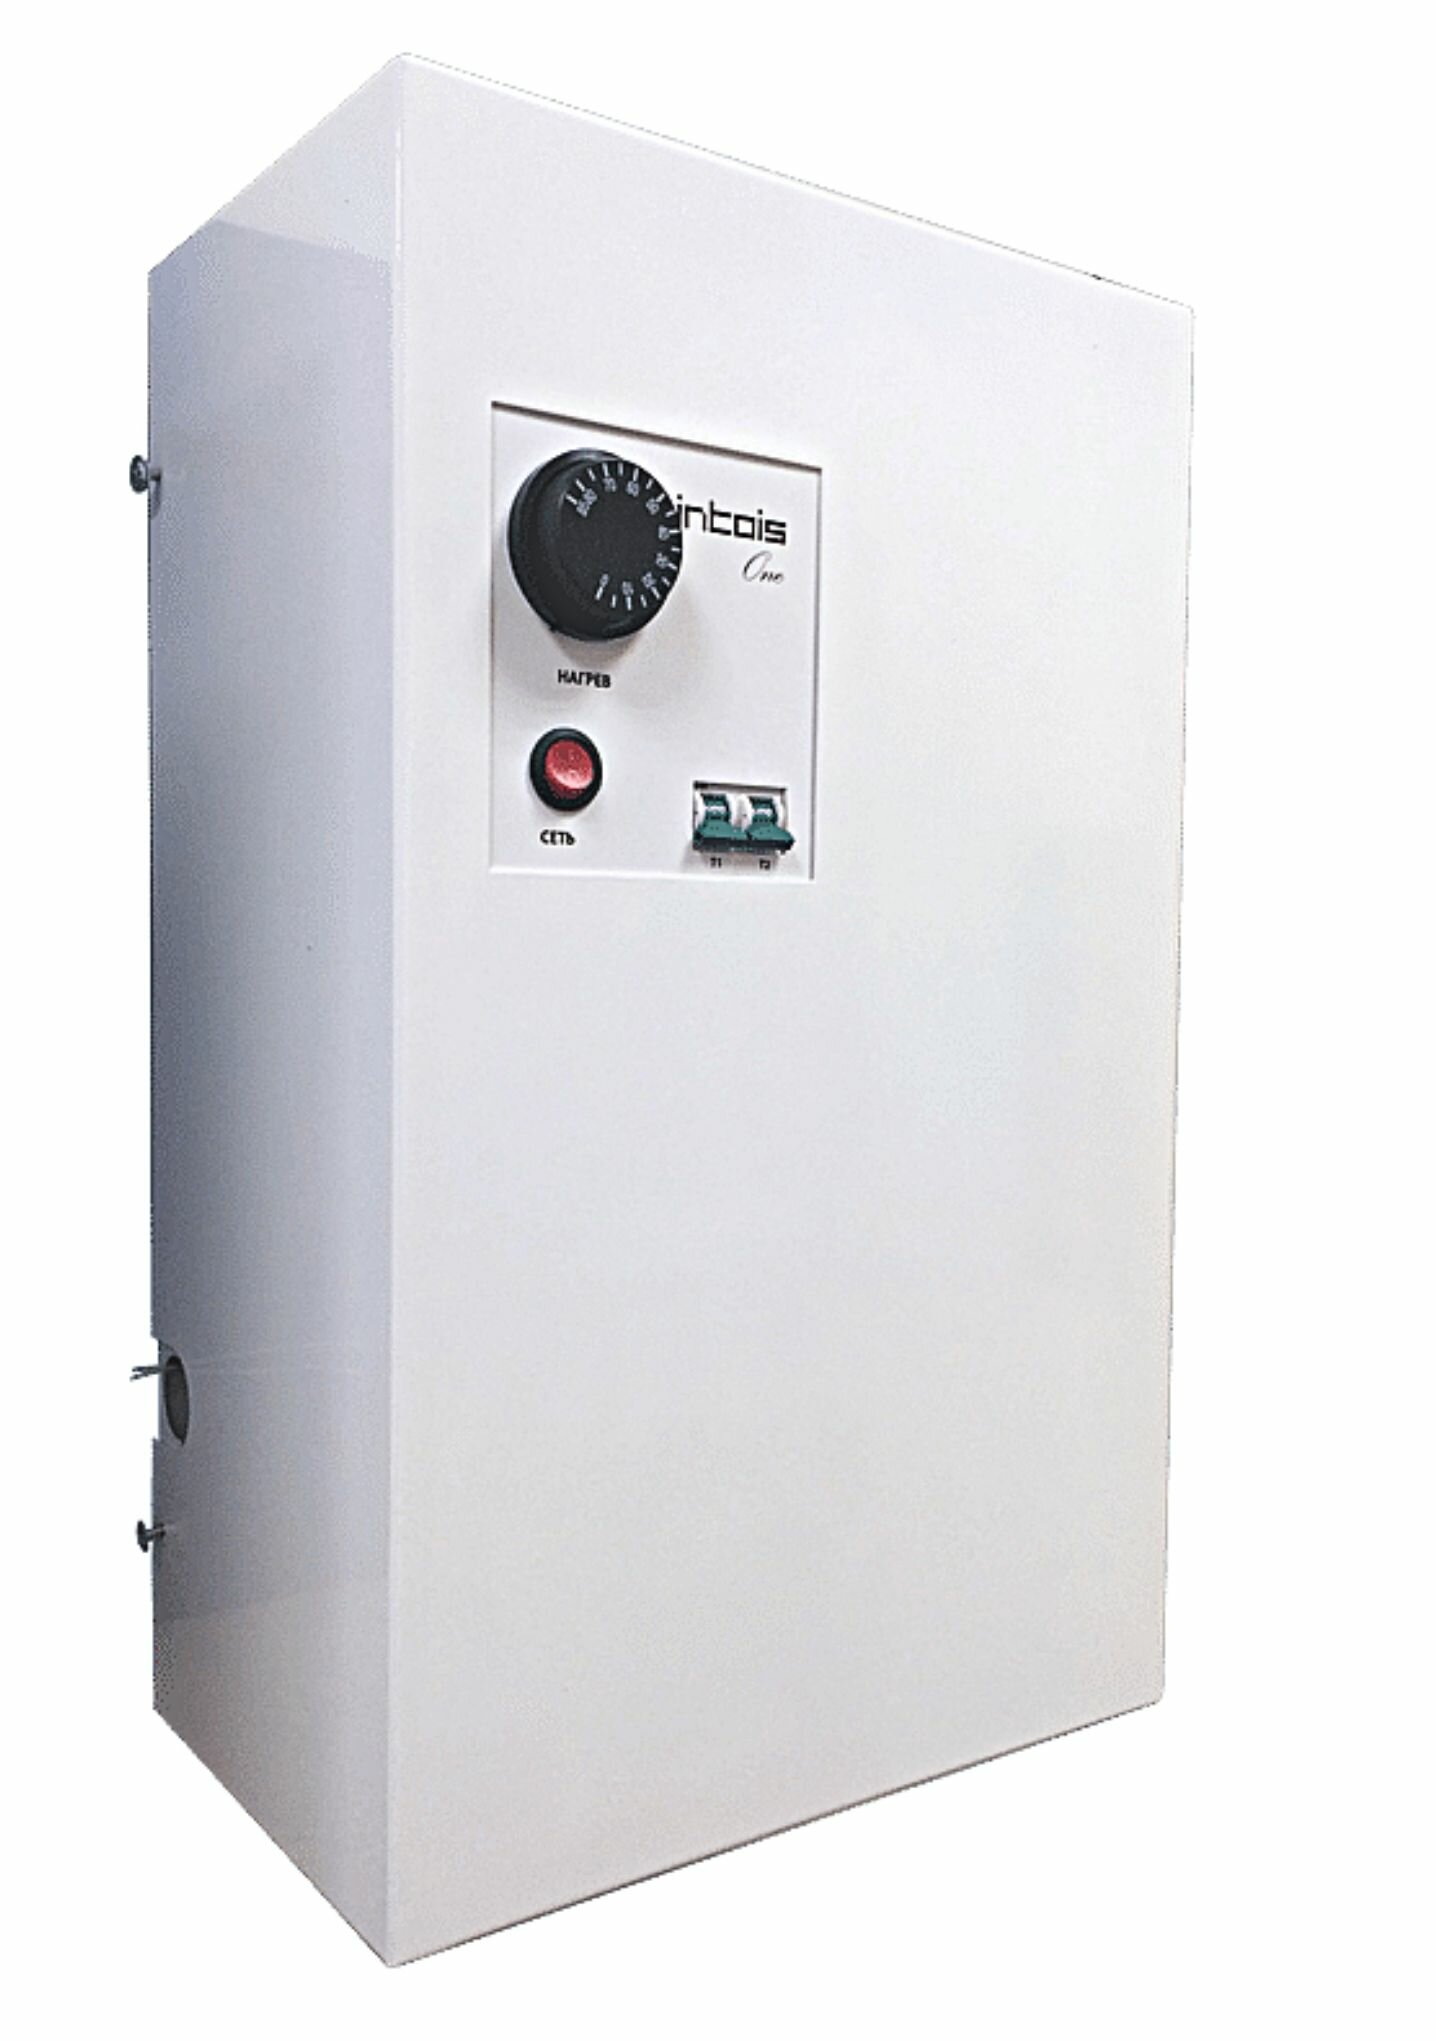 Электрический котел отопления, электрокотел Интоис One, 9 кВт, настенный, одноконтурный.